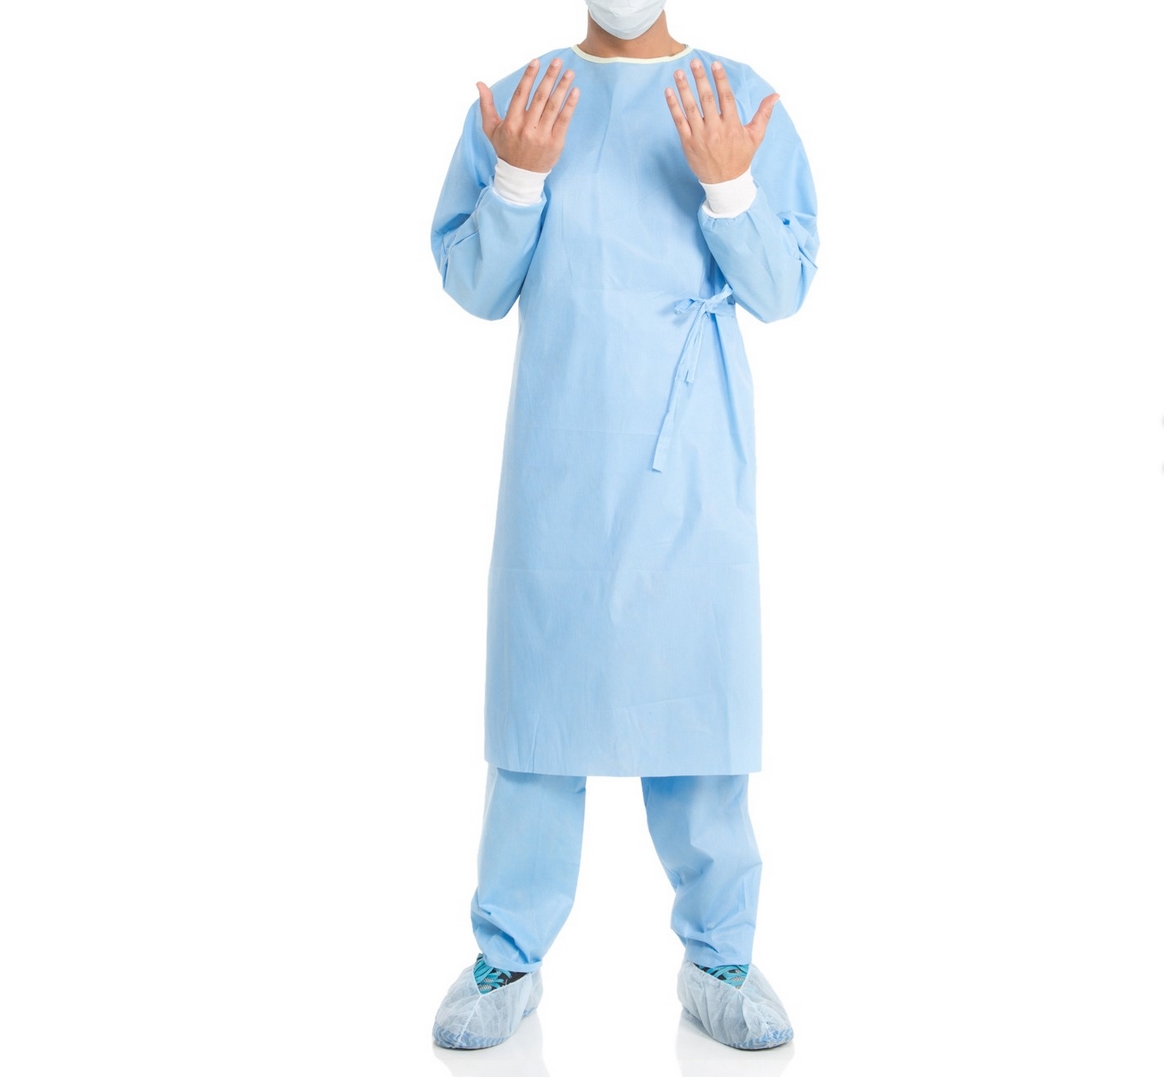  Неармированные хирургические халаты с рукавами реглан